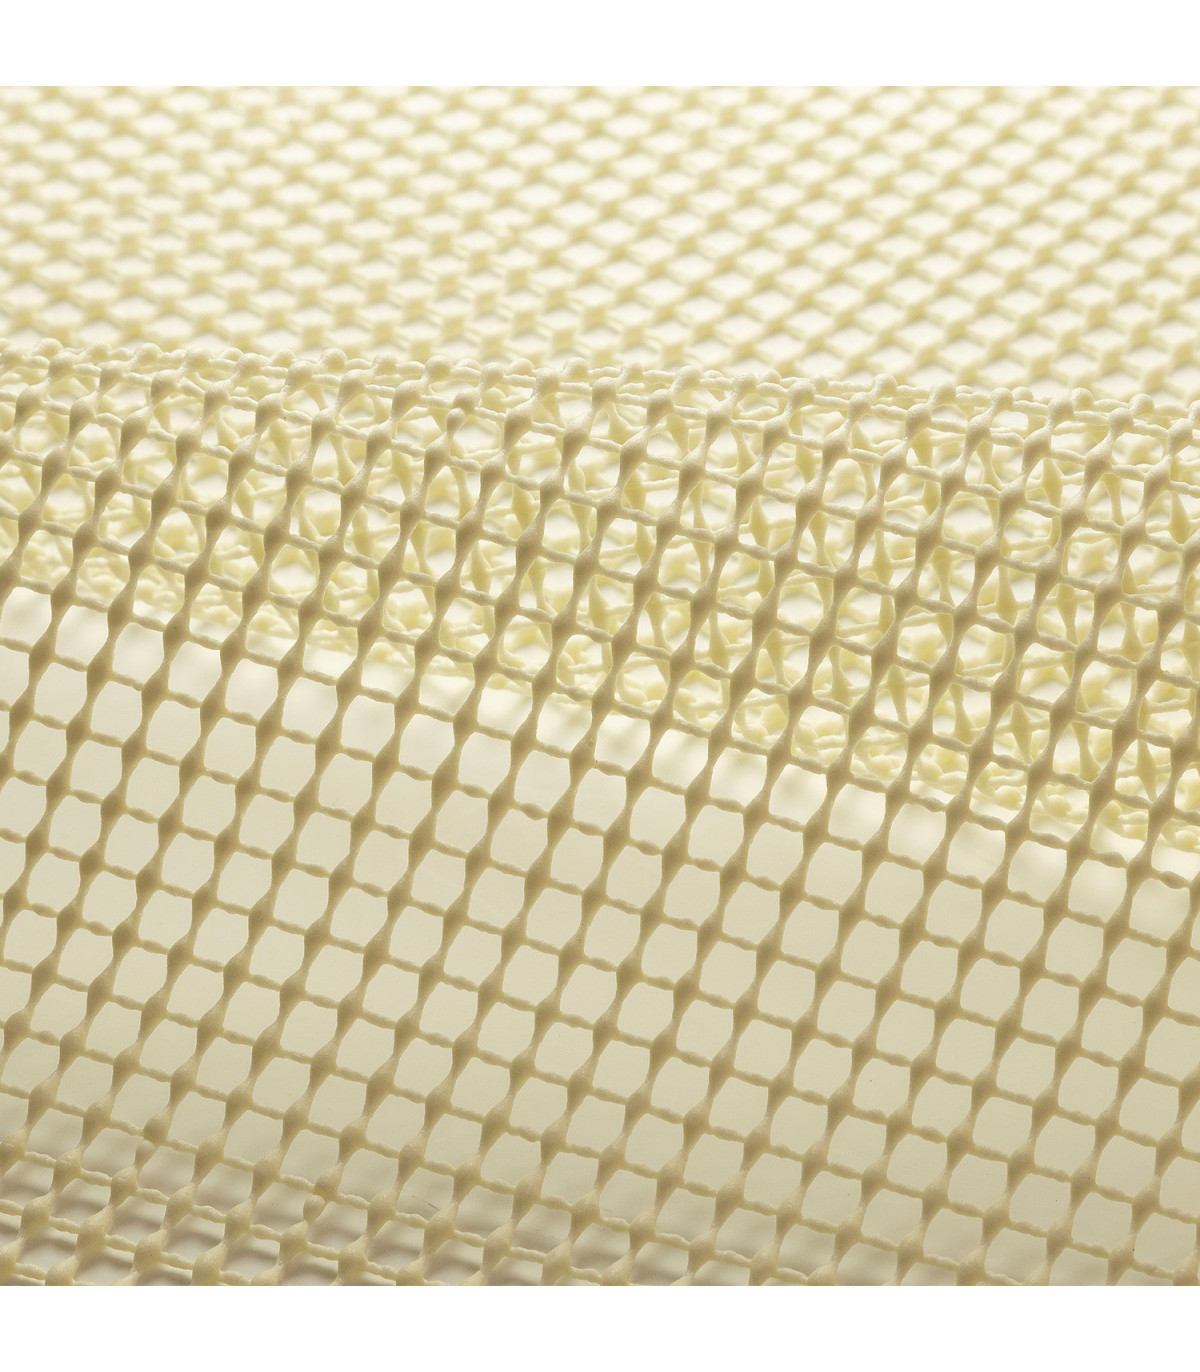 Banzai spoor deeltje Non-slip net for rubber mats